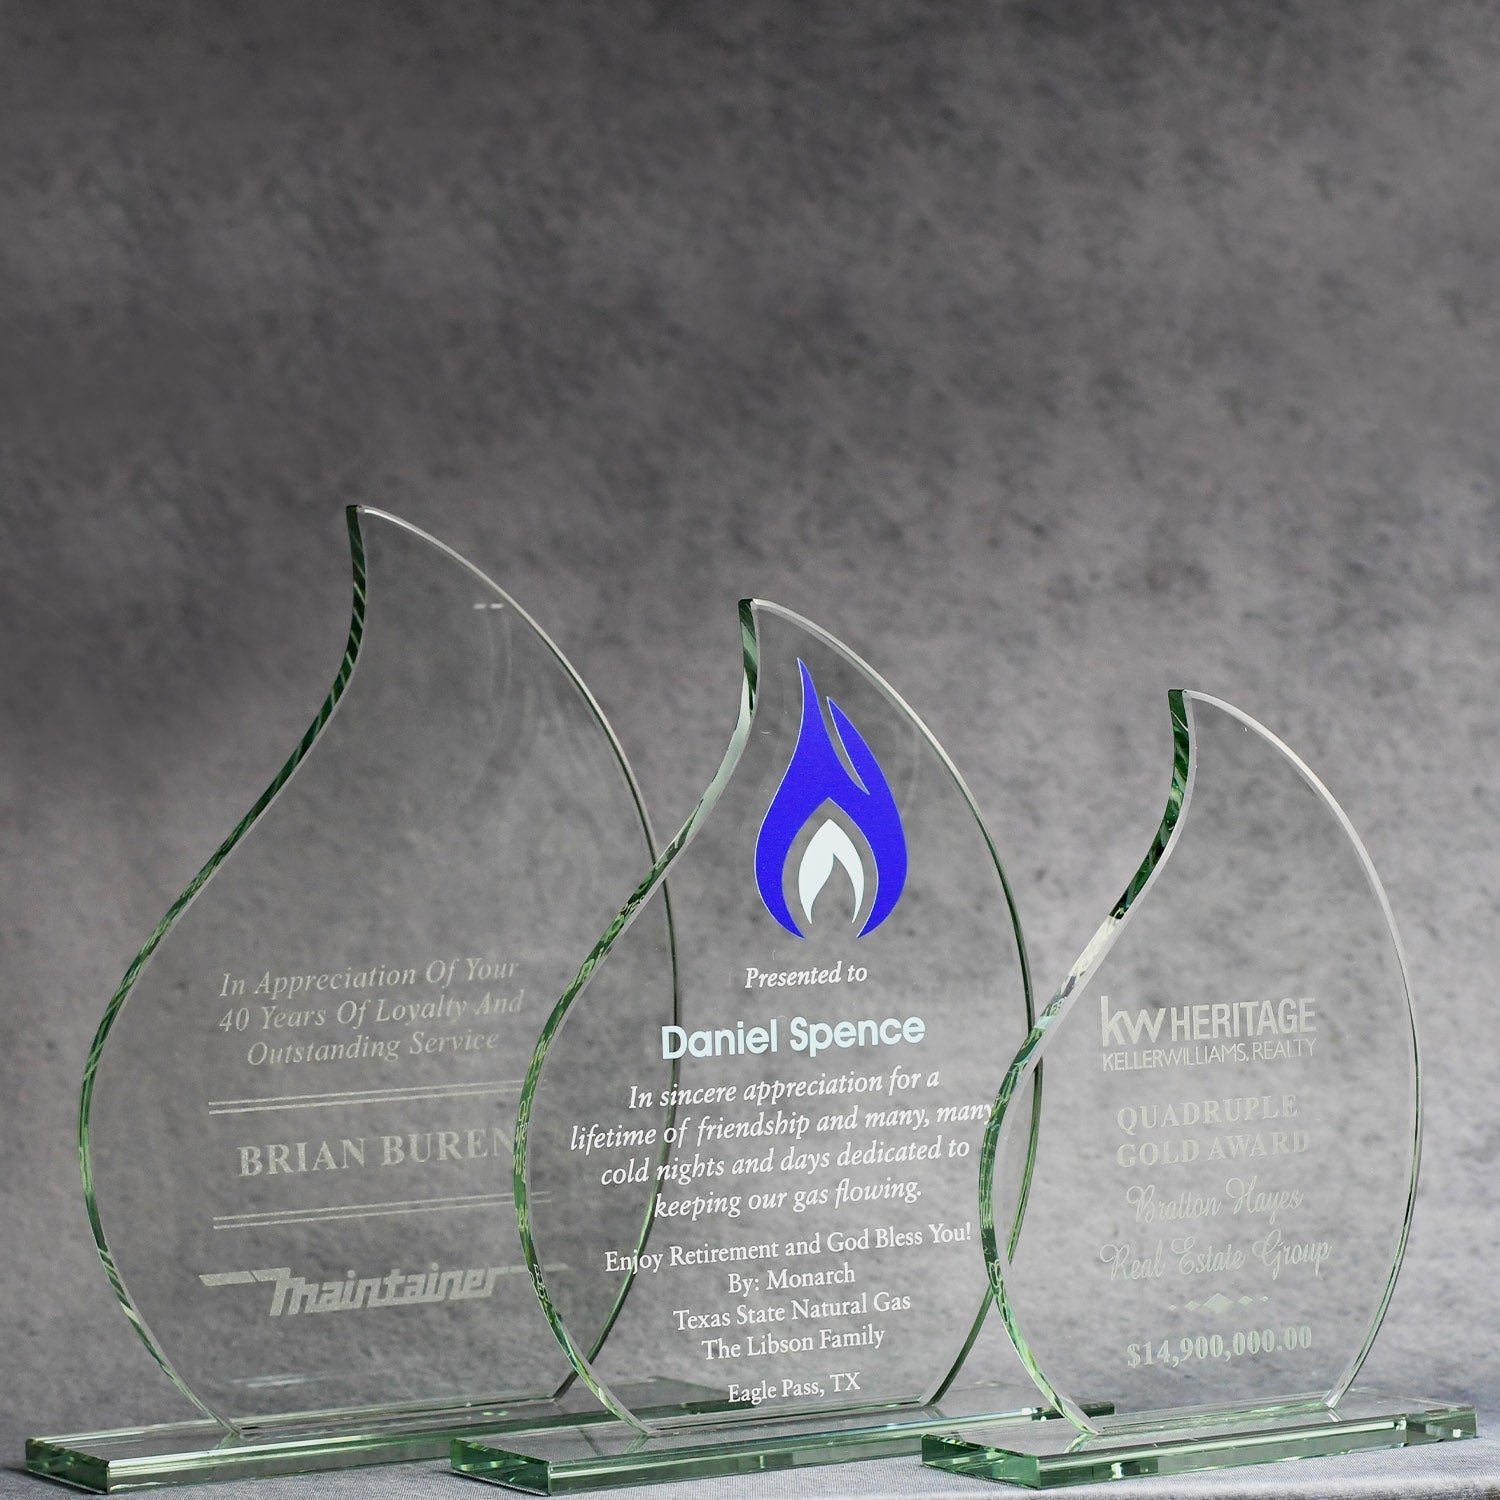 Economy Jade Flame | Alliance Awards LLC.